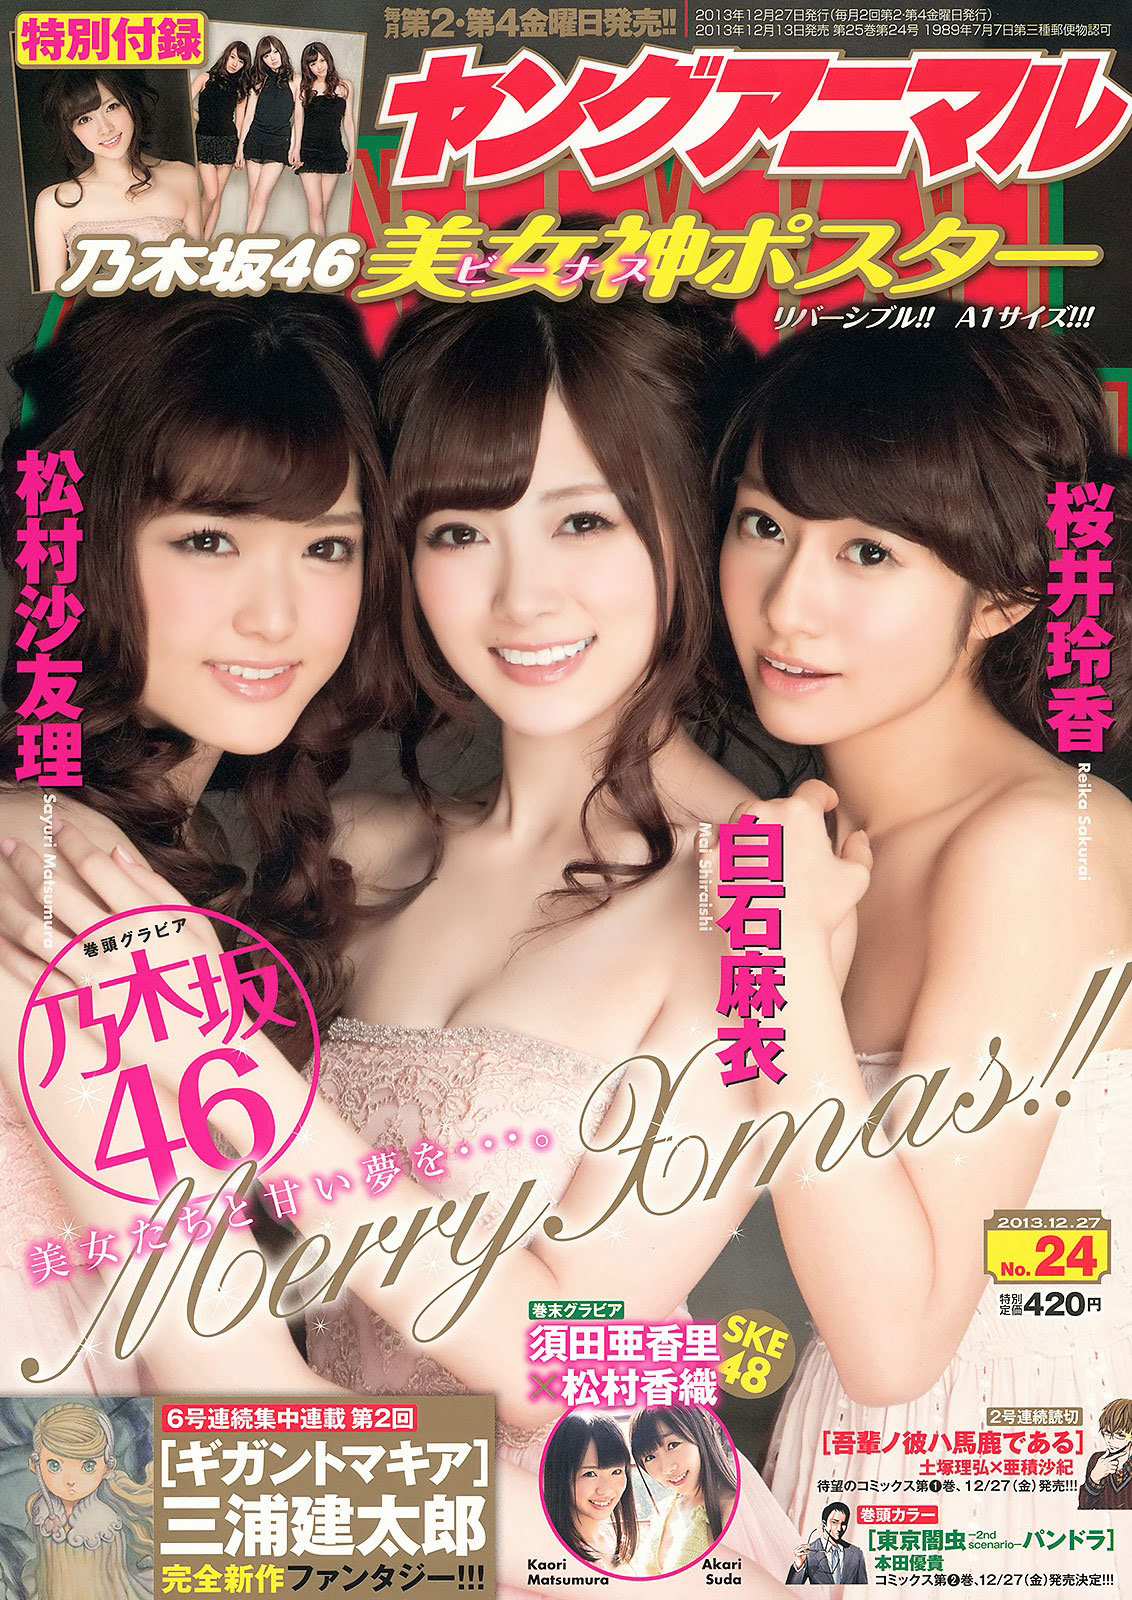 Nogizaka46 Japanese Young Animal Magazine